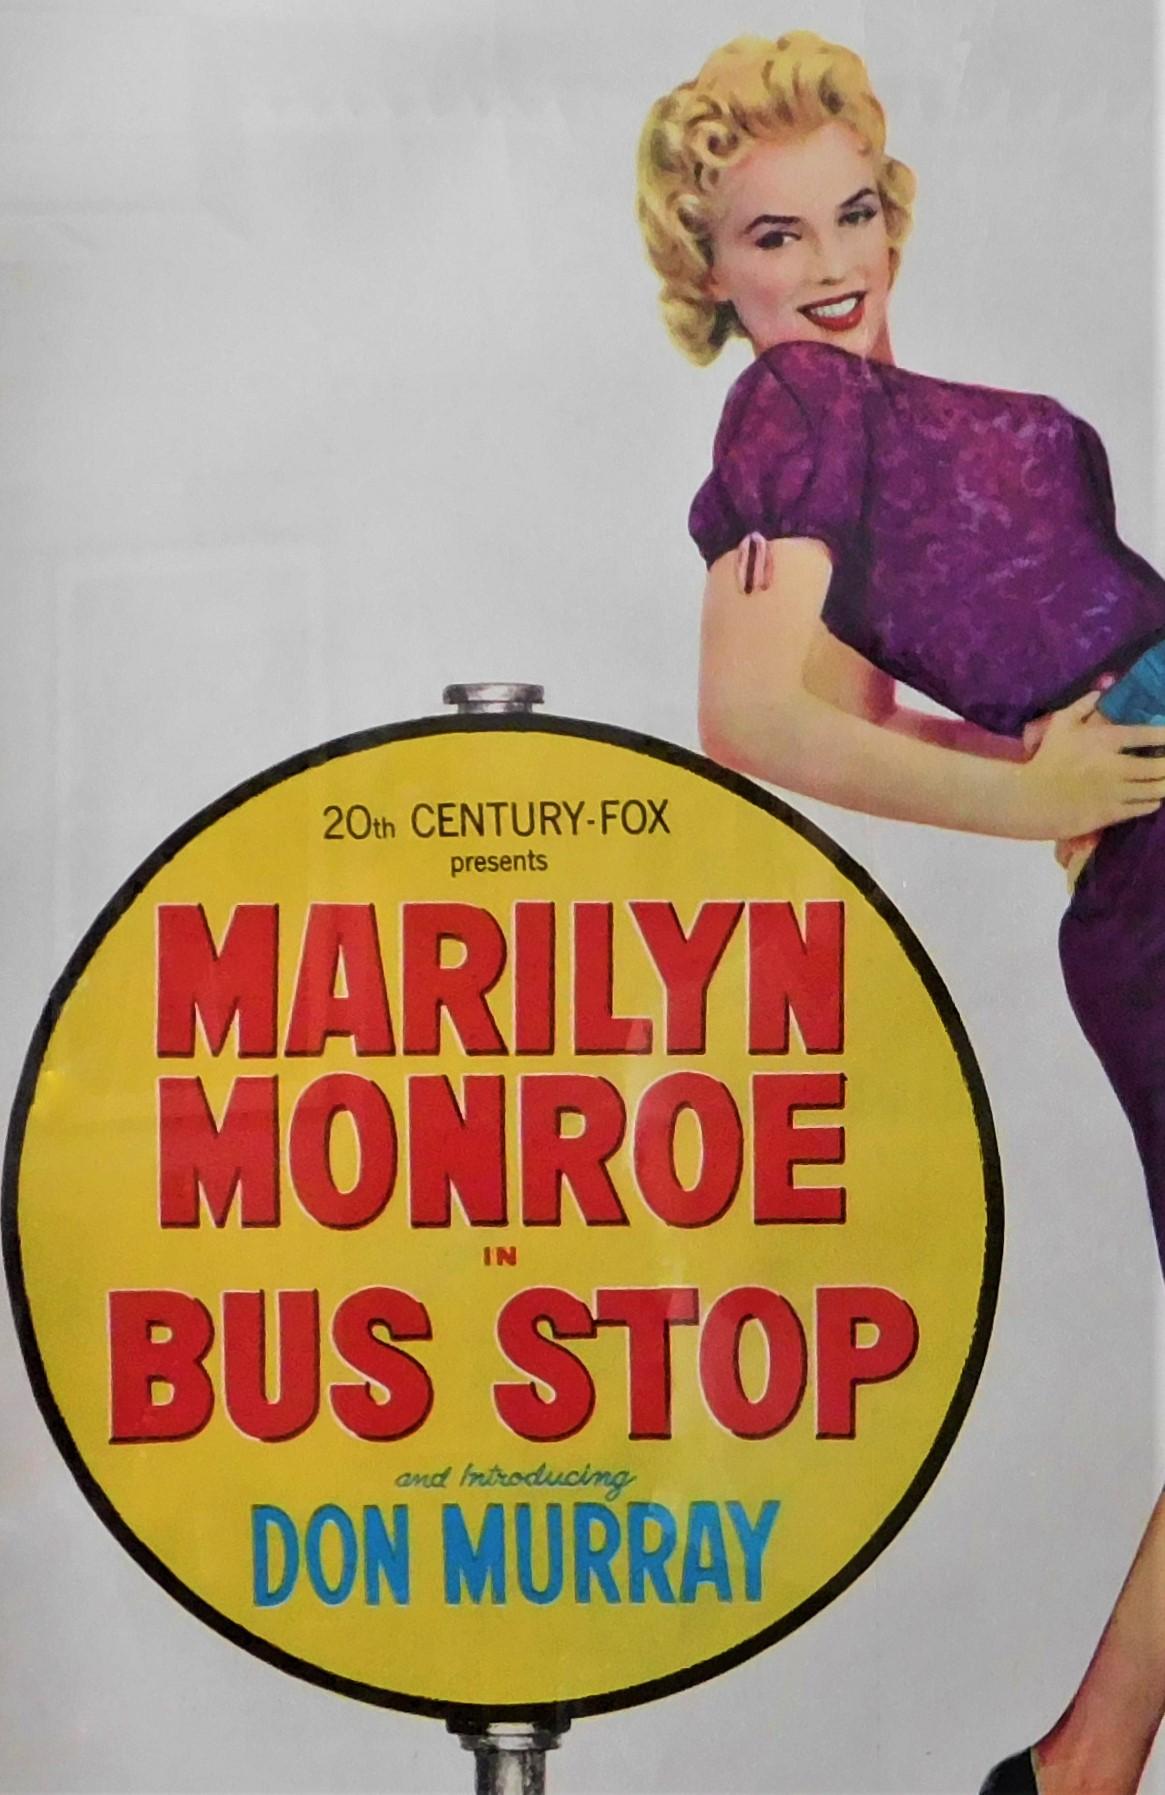 Bus stop Marilyn Monroe #2 cult movie poster print